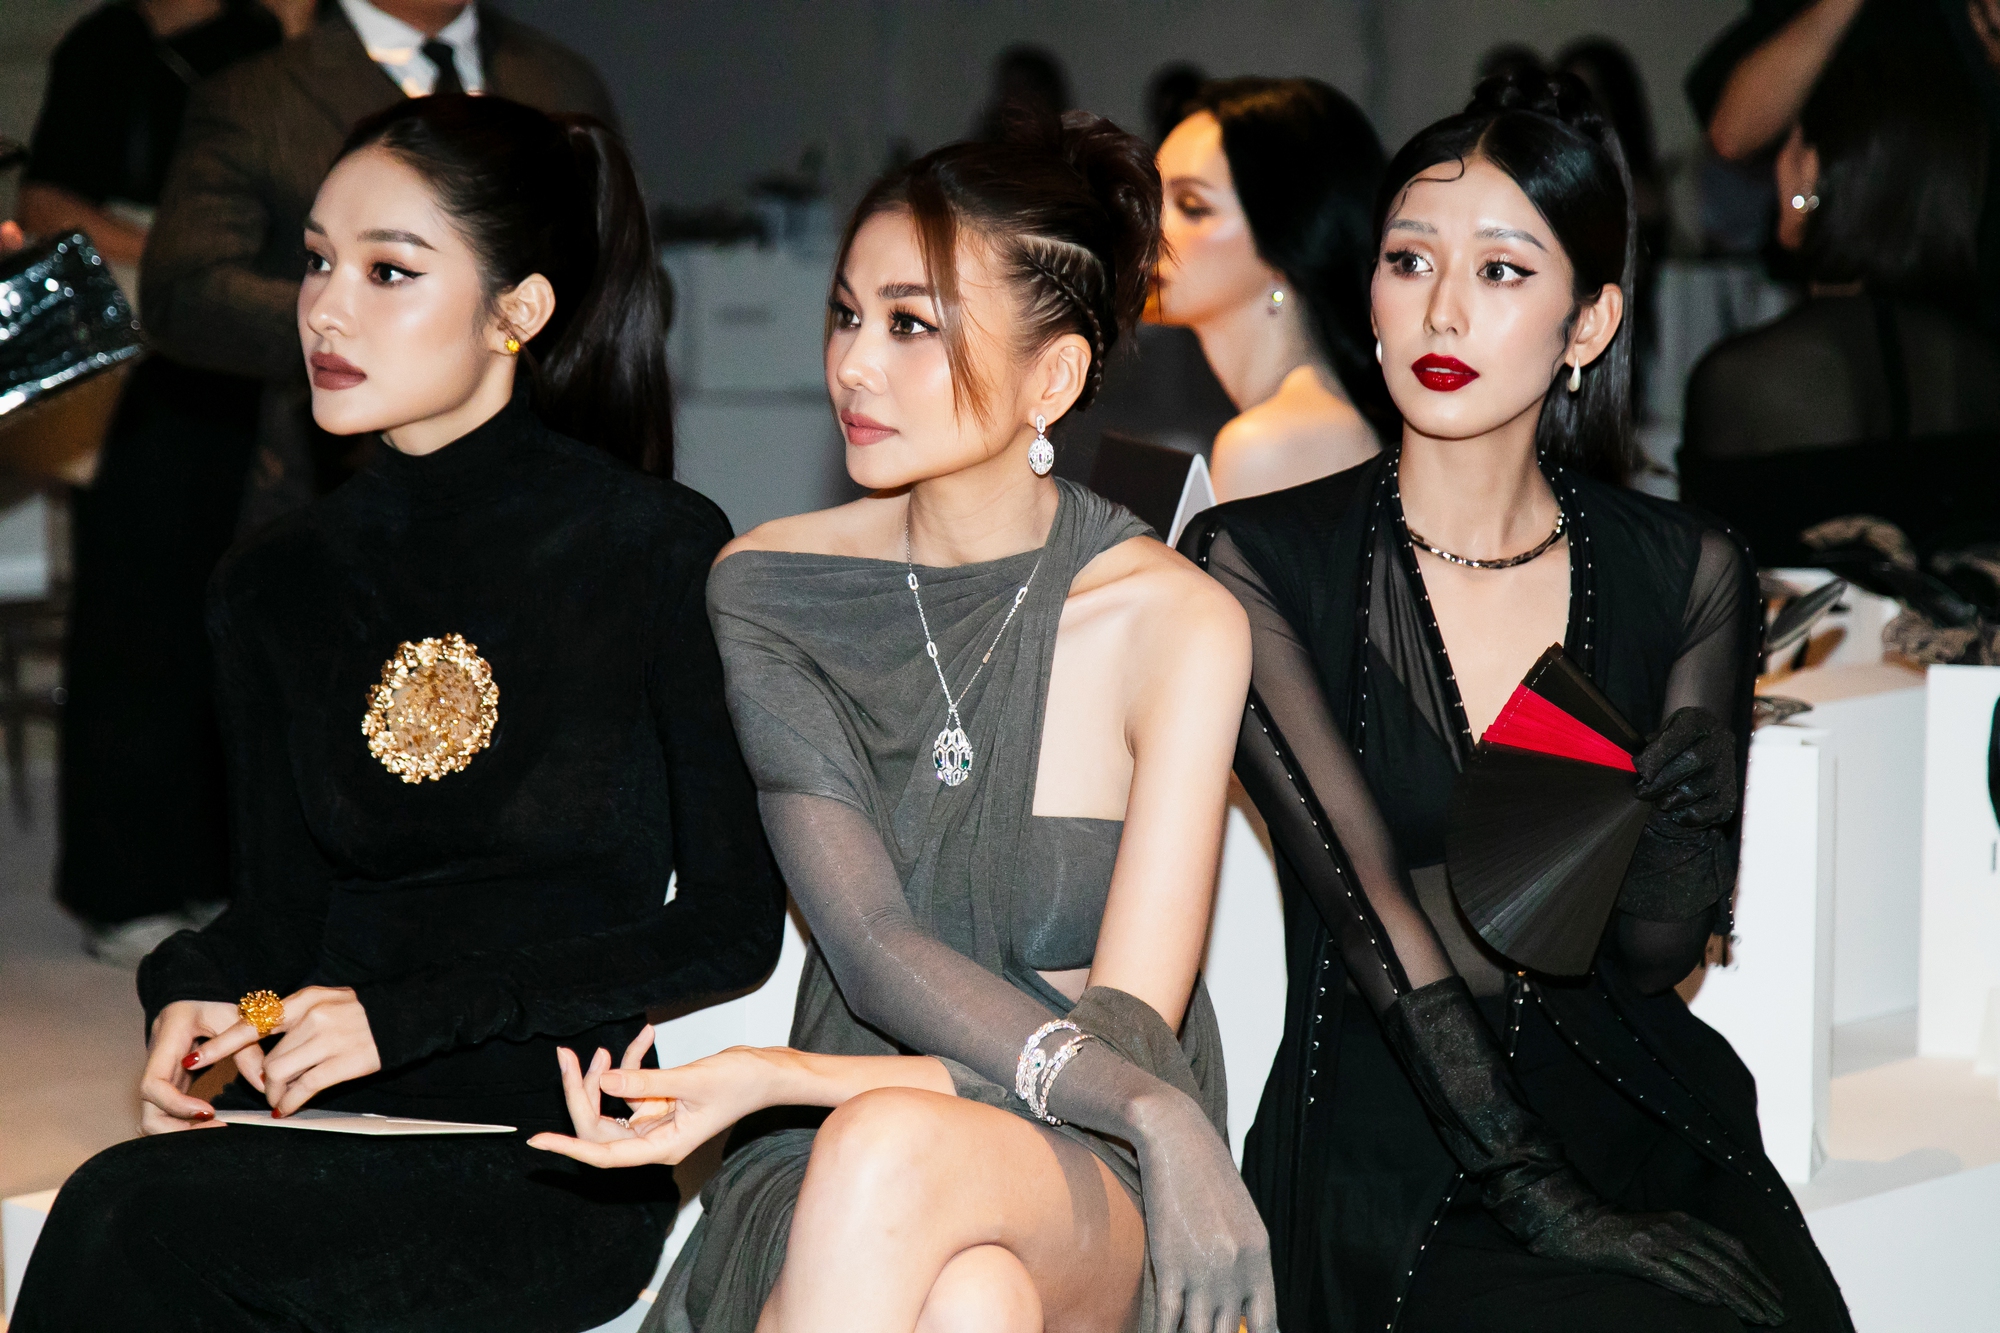 Siêu mẫu Thanh Hằng đeo trang sức 5,5 tỷ đồng đi sự kiện  - Ảnh 7.